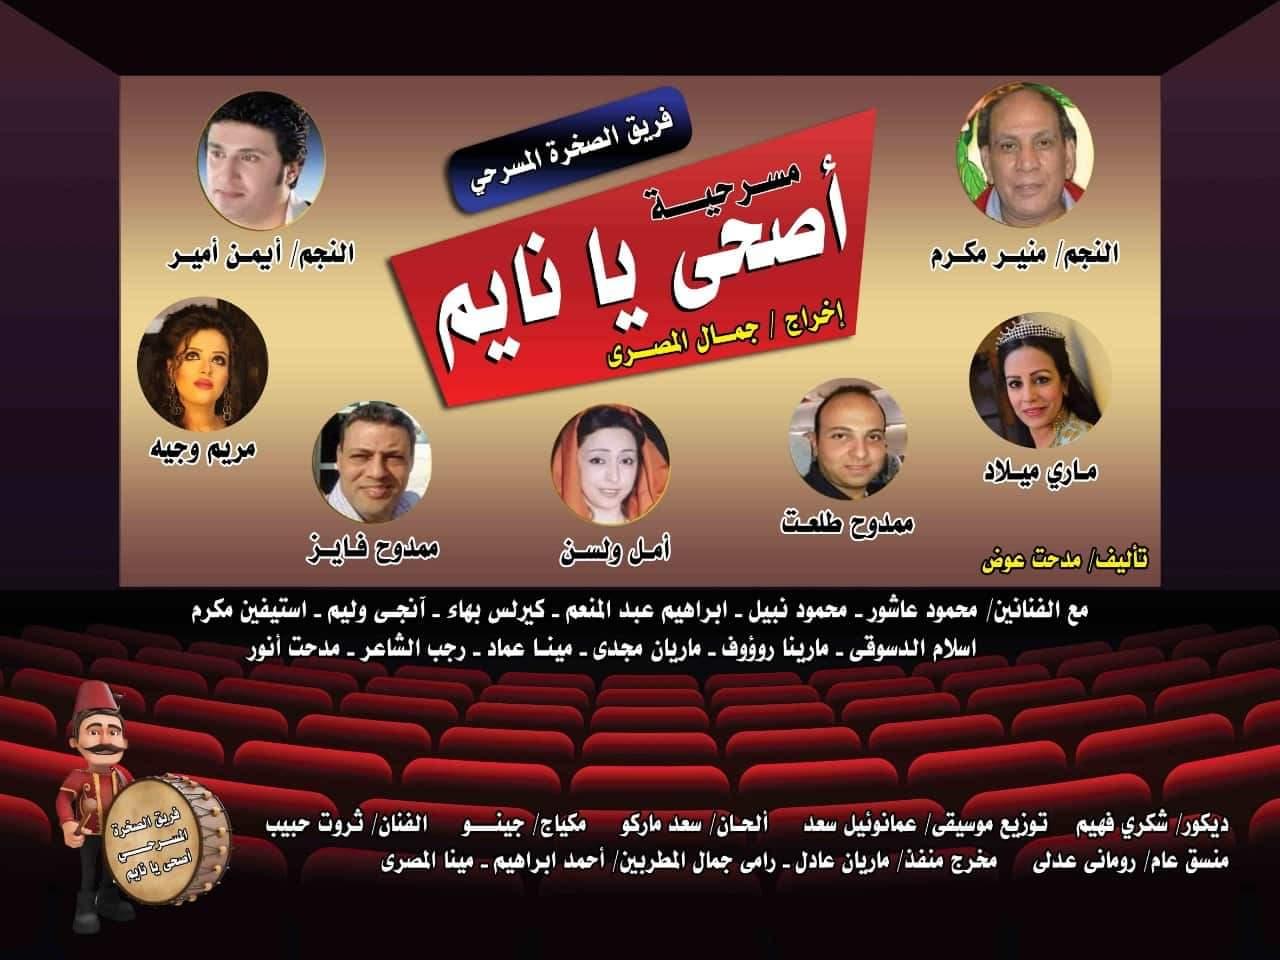   المخرج «جمال المصري» و فريقه يقدمان أوبريت «اصحى يا نايم» في السعودية 